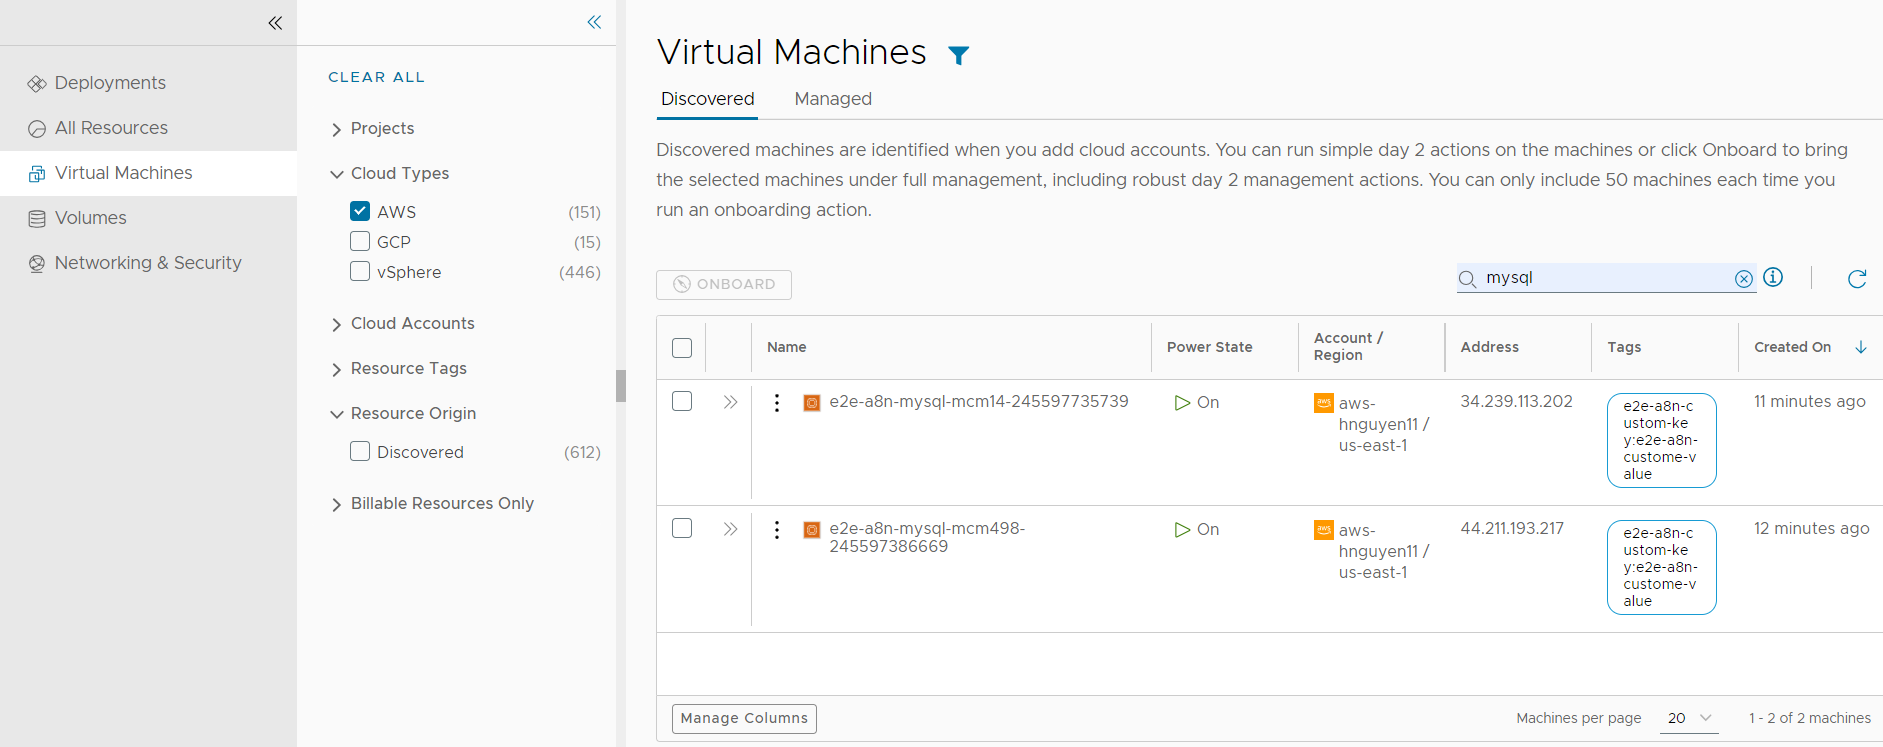 Capture d'écran de la page de machines virtuelles avec le filtre AWS et Découvert, et la recherche MySQL appliquée.